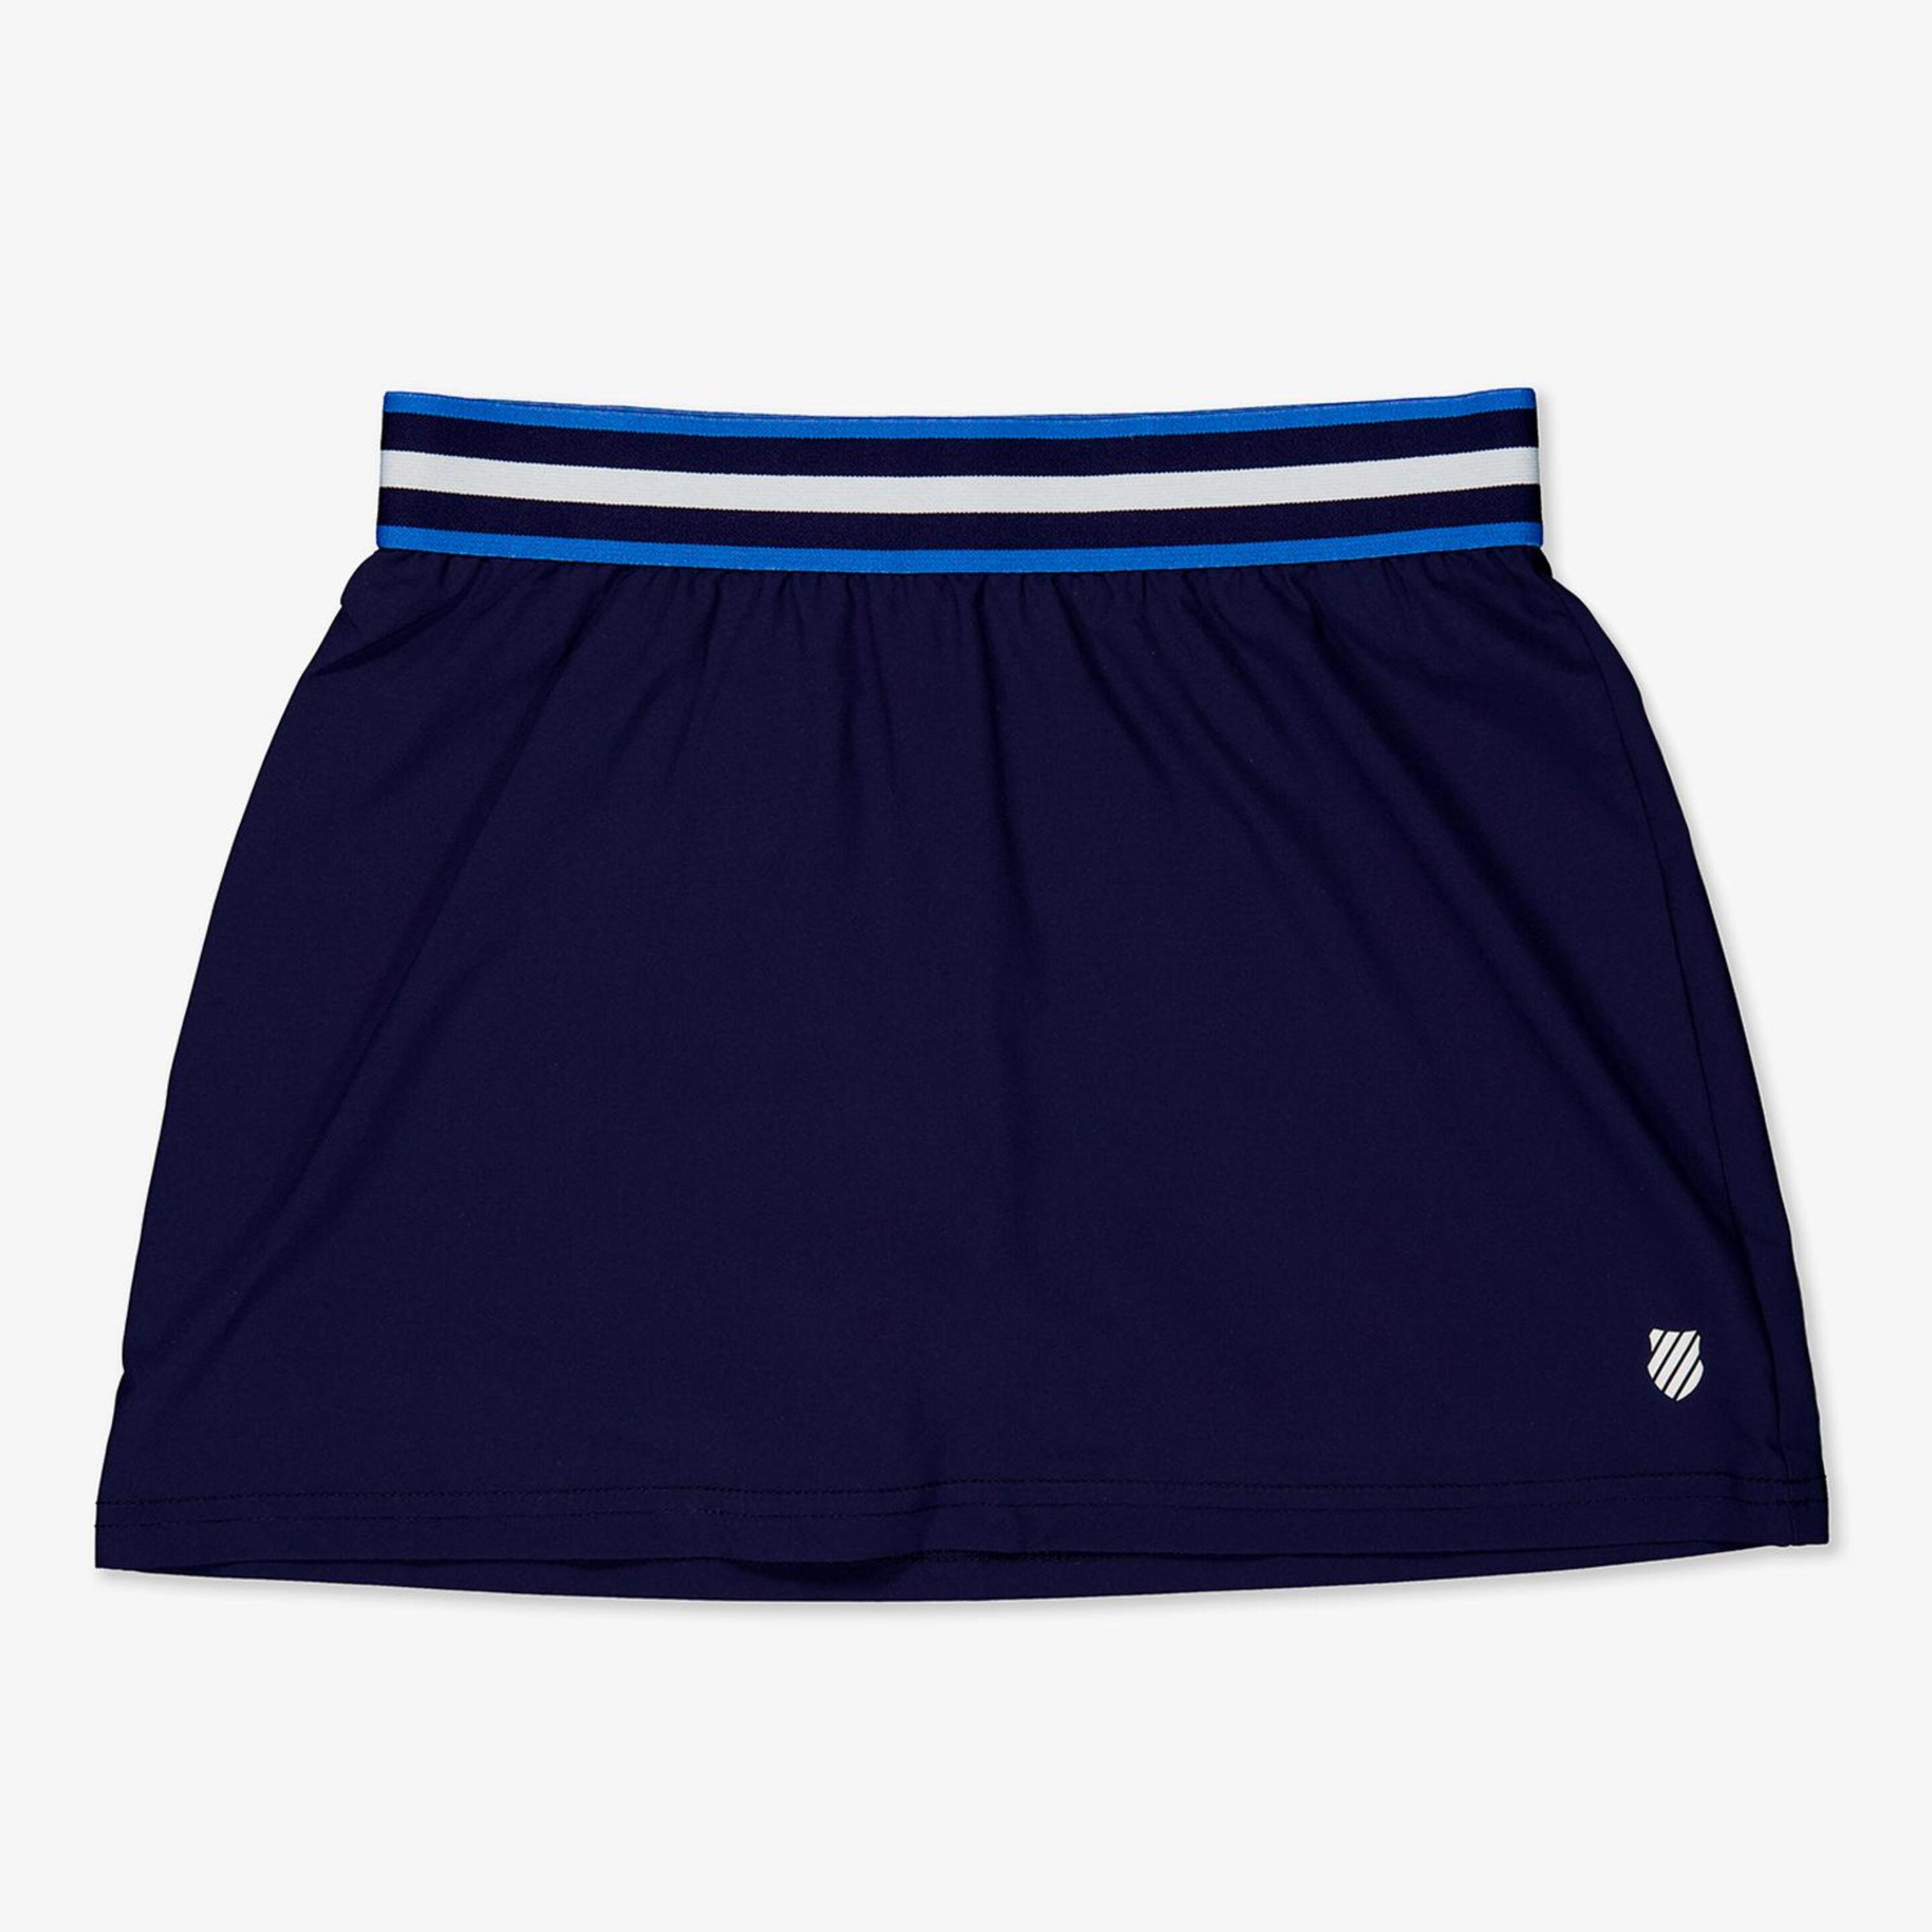 K-swiss Core Team - azul - Falda Pantalón Tenis Niña